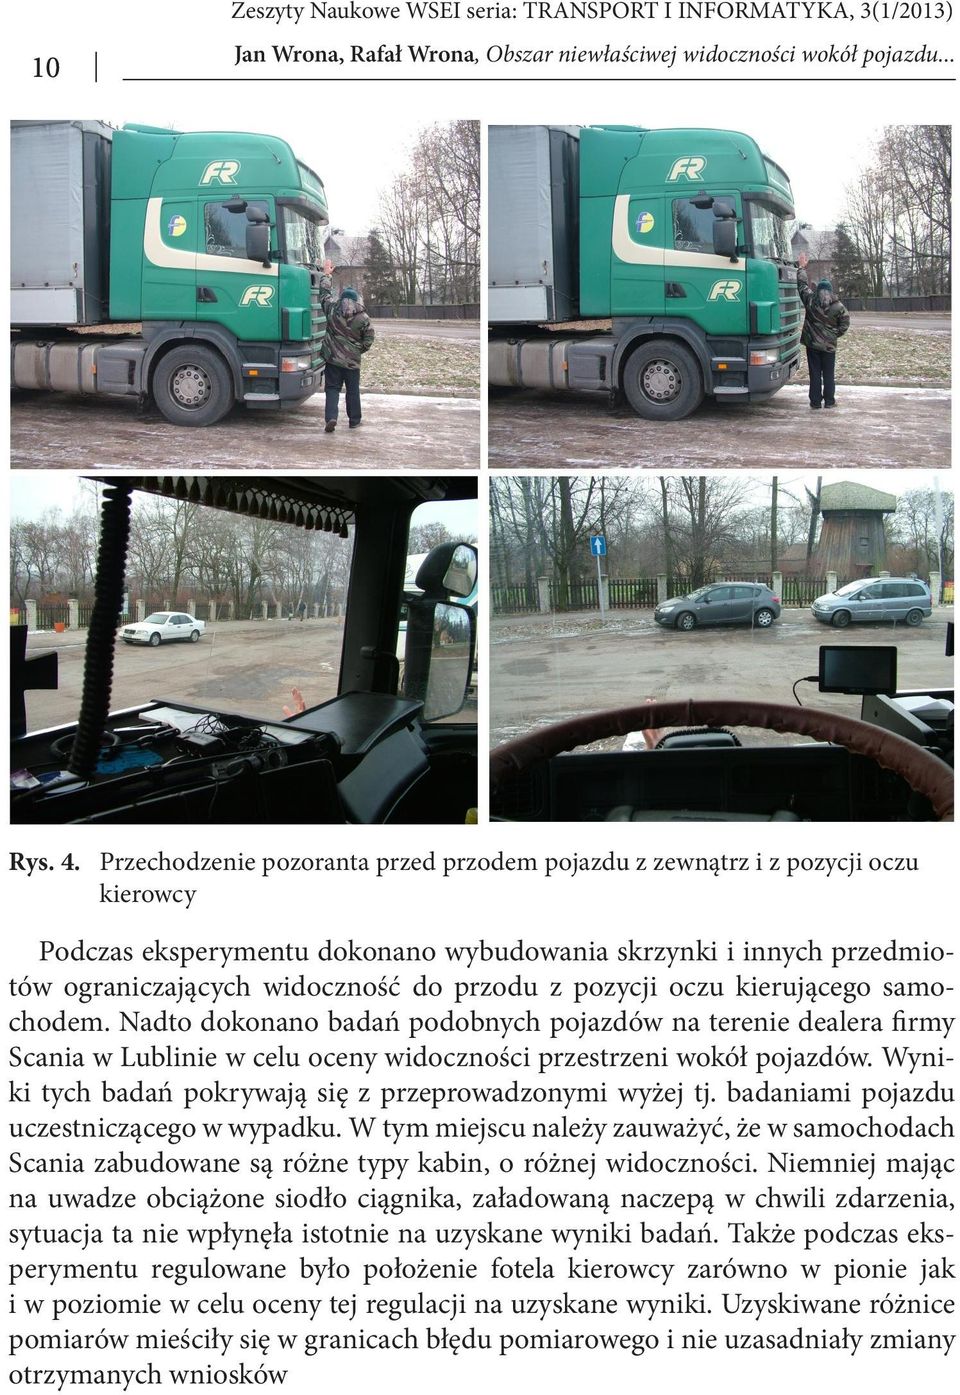 pozycji oczu kierującego samochodem. Nadto dokonano badań podobnych pojazdów na terenie dealera firmy Scania w Lublinie w celu oceny widoczności przestrzeni wokół pojazdów.